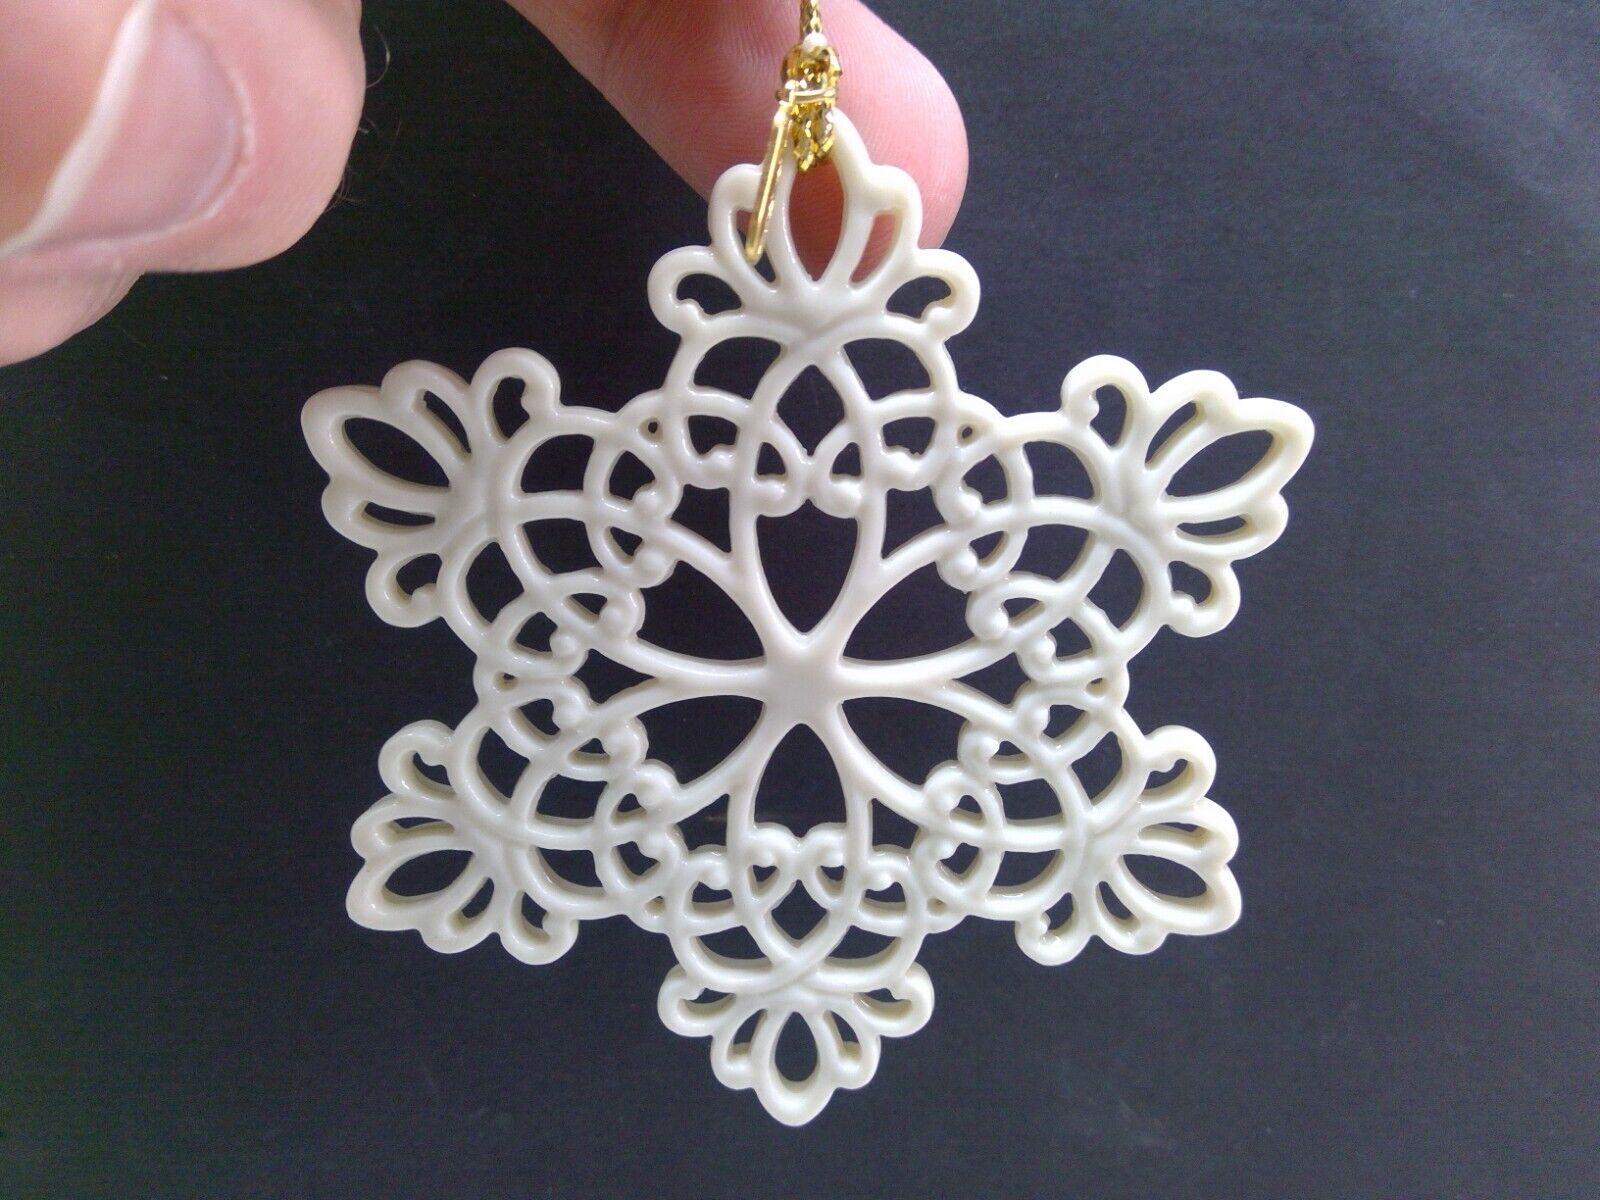 Lenox 1997 Pierced Snowflake Christmas Ornament - NO BOX